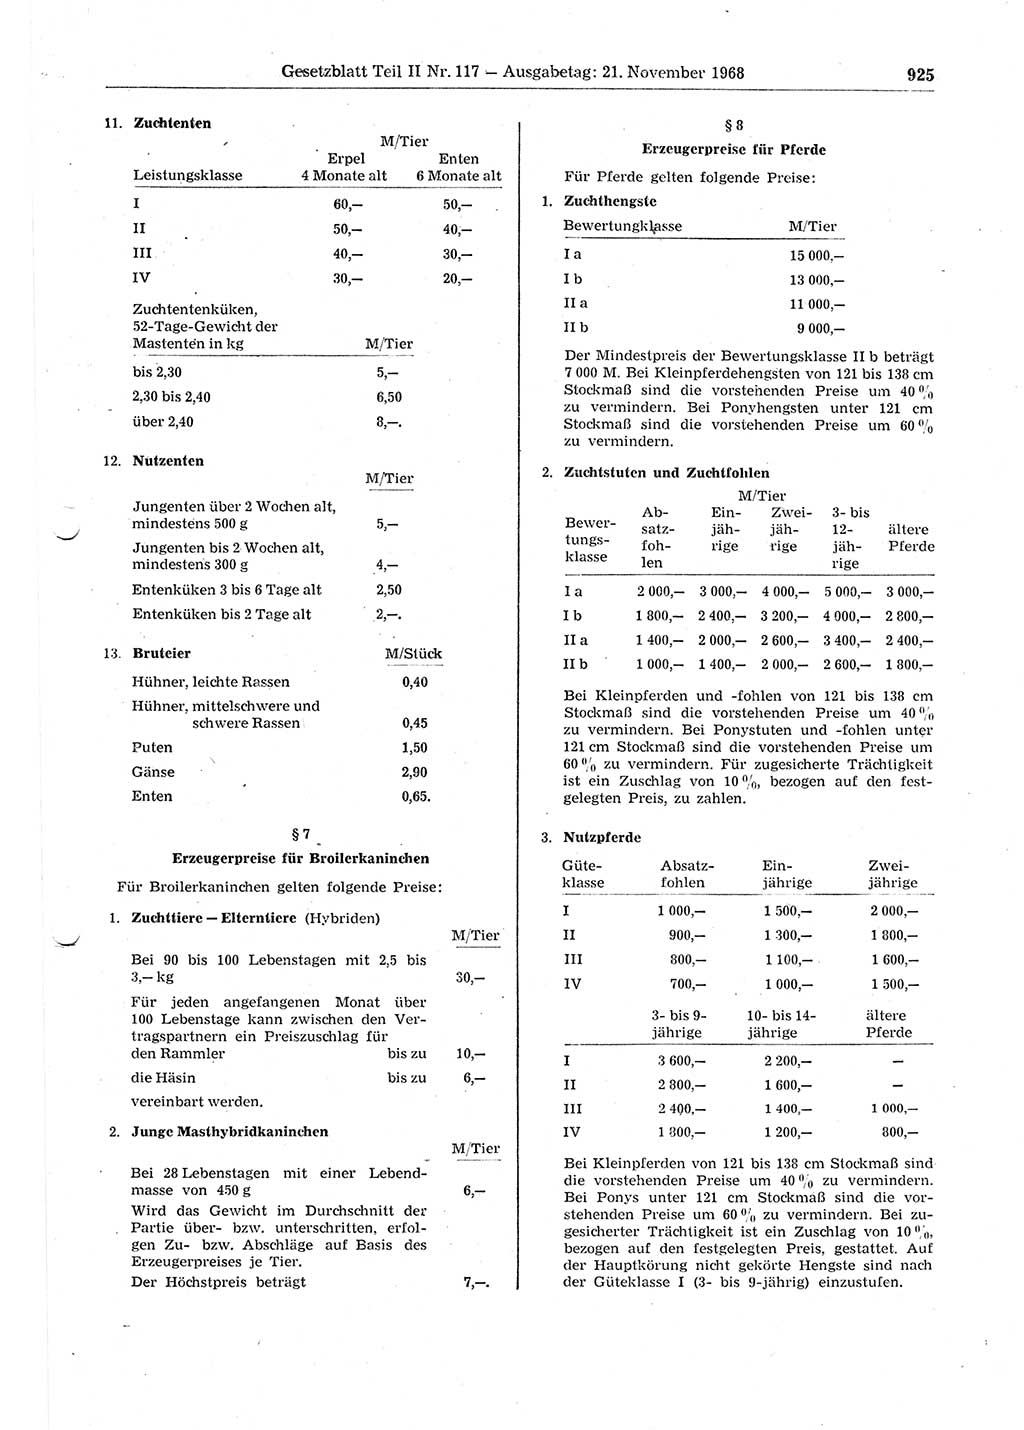 Gesetzblatt (GBl.) der Deutschen Demokratischen Republik (DDR) Teil ⅠⅠ 1968, Seite 925 (GBl. DDR ⅠⅠ 1968, S. 925)